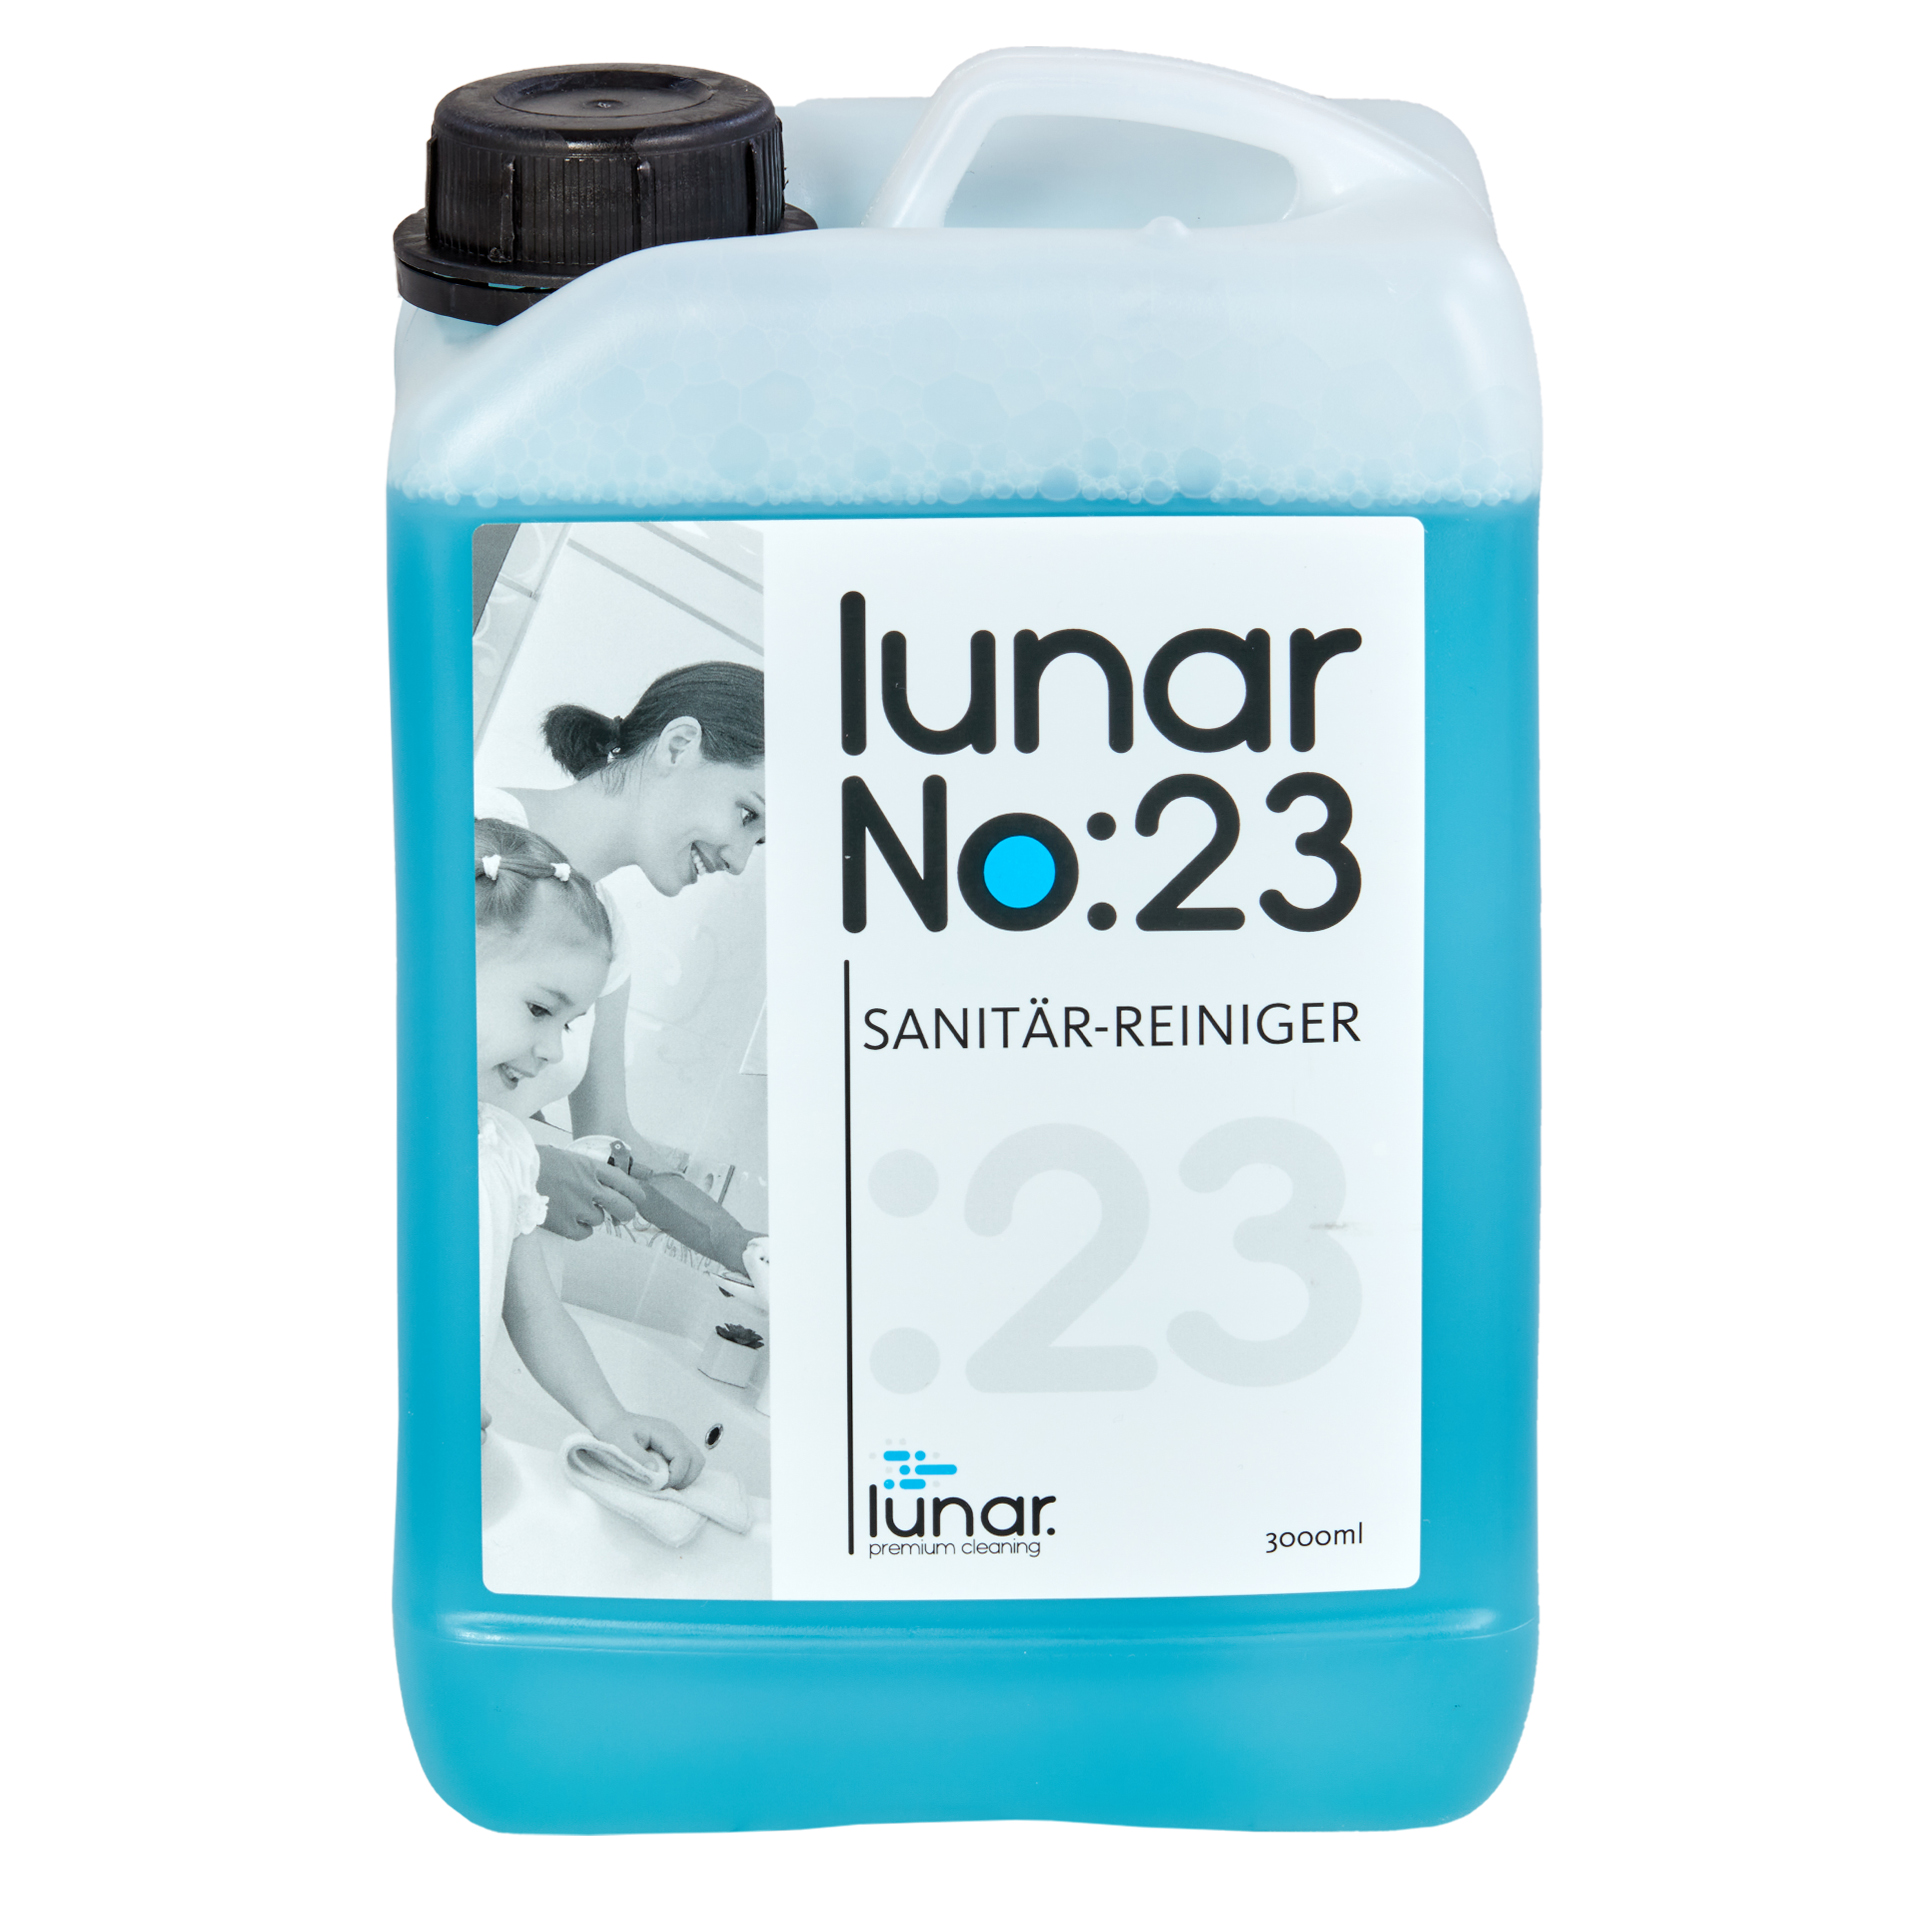 lunar. premium cleaning 3 l Sanitärreiniger Konzentrat Kanister